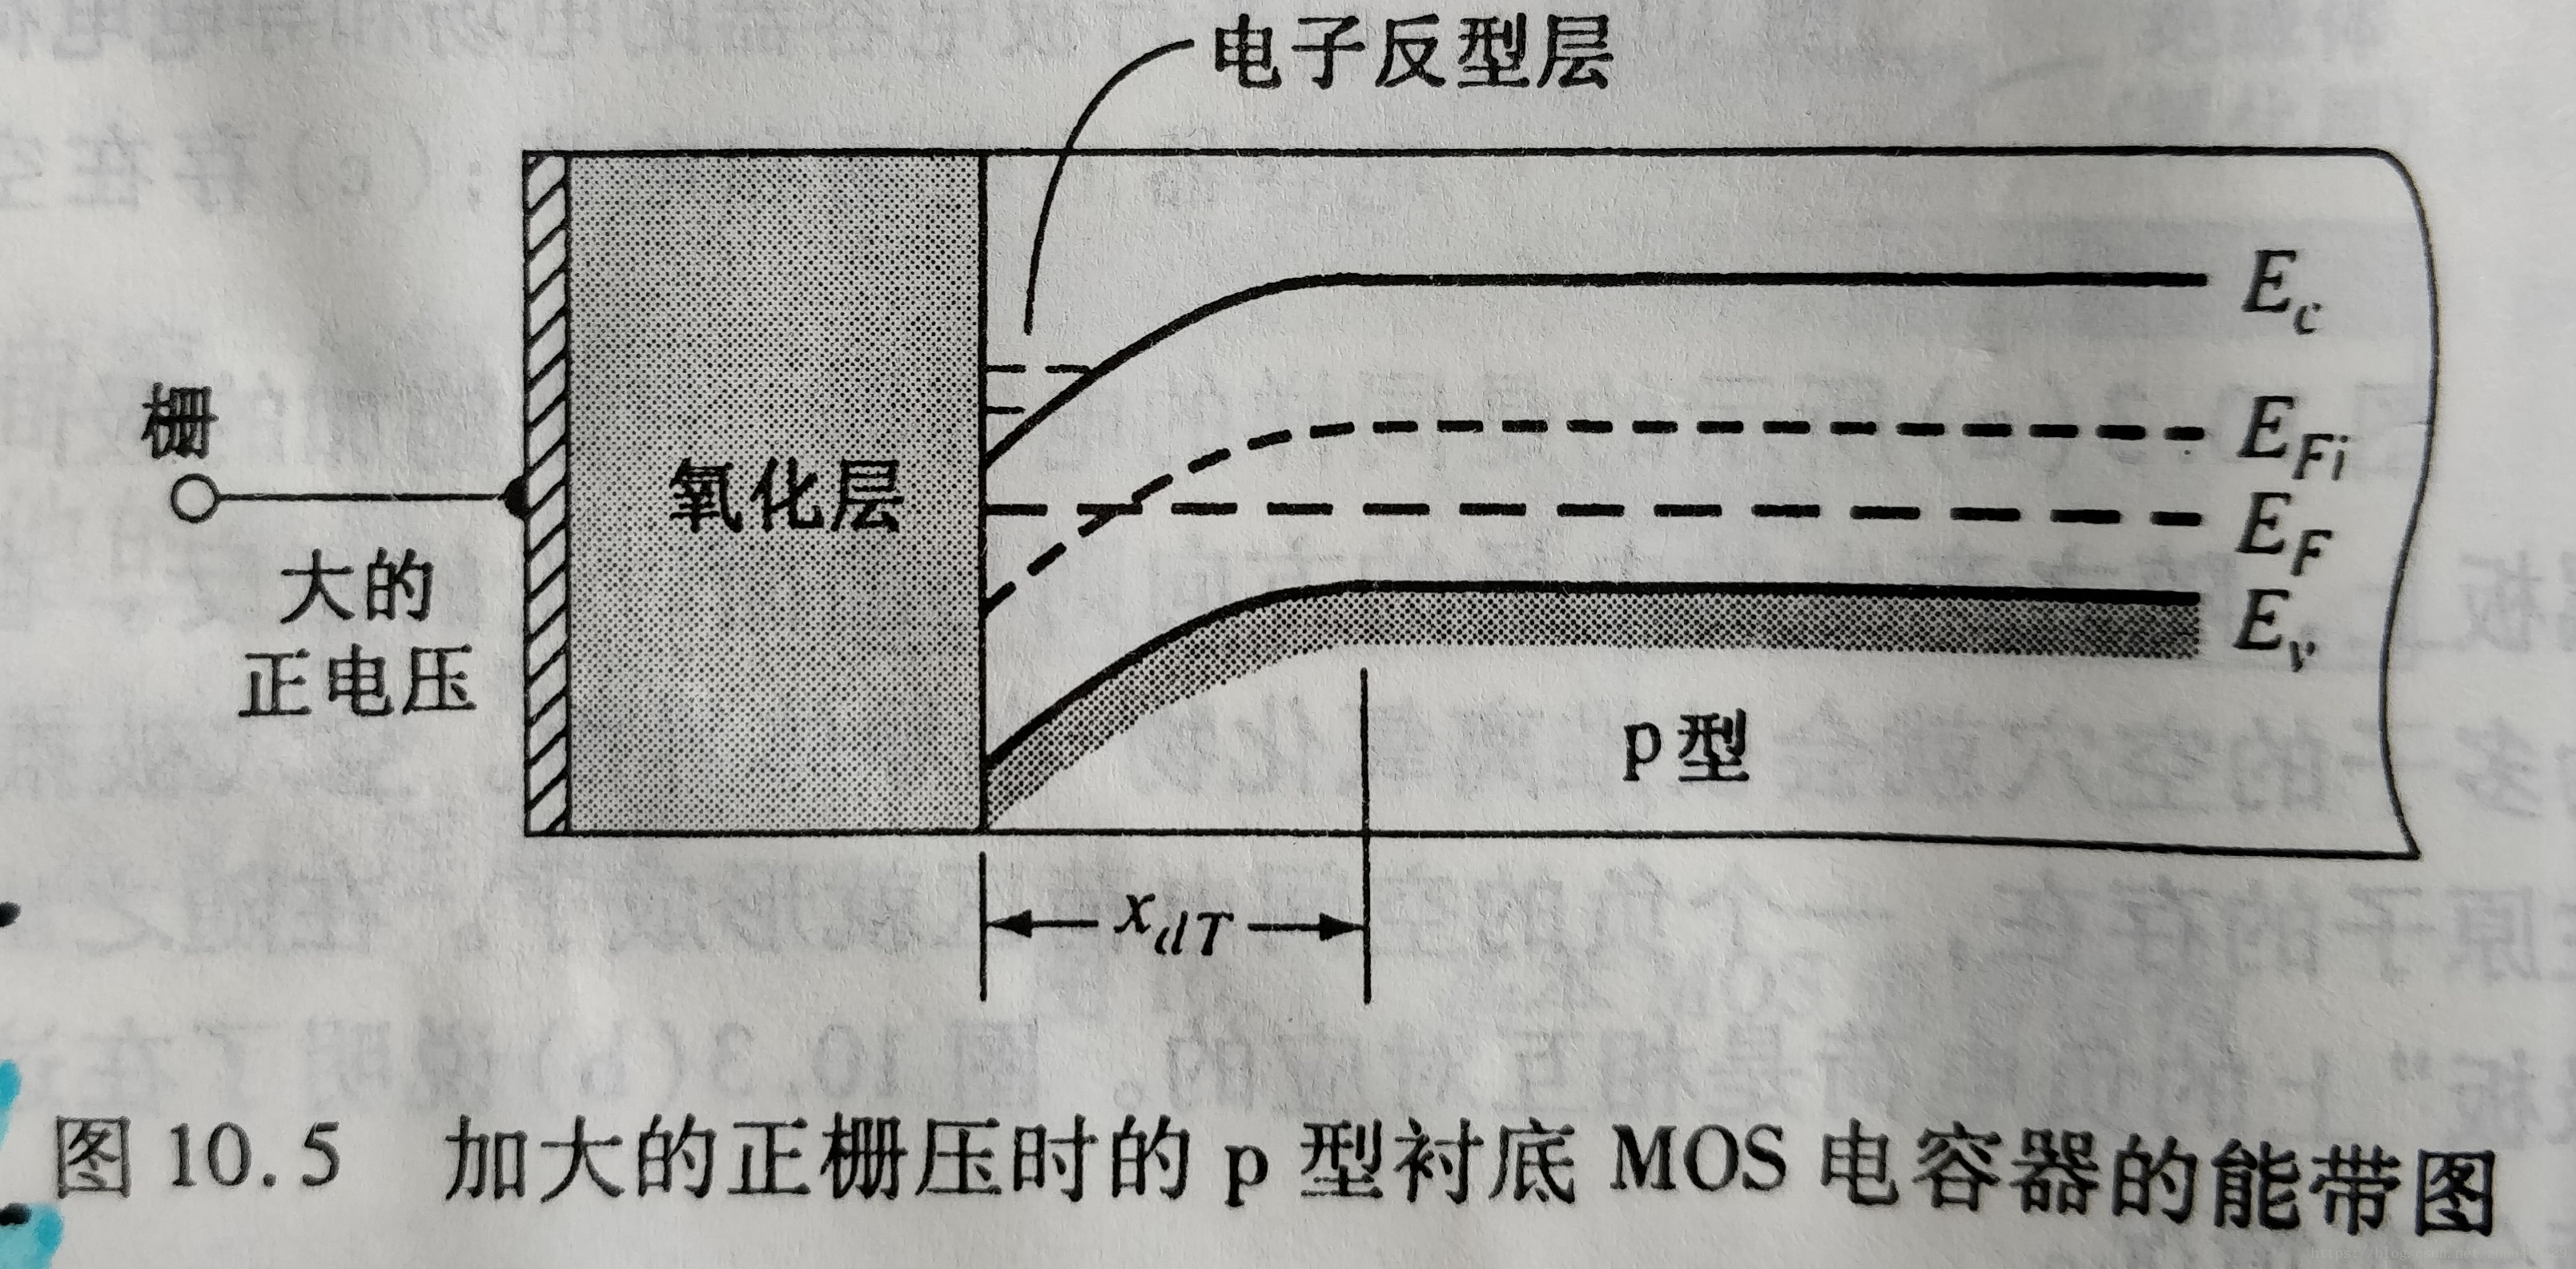 加大的正栅压时的p型衬底MOS电容器的能带图